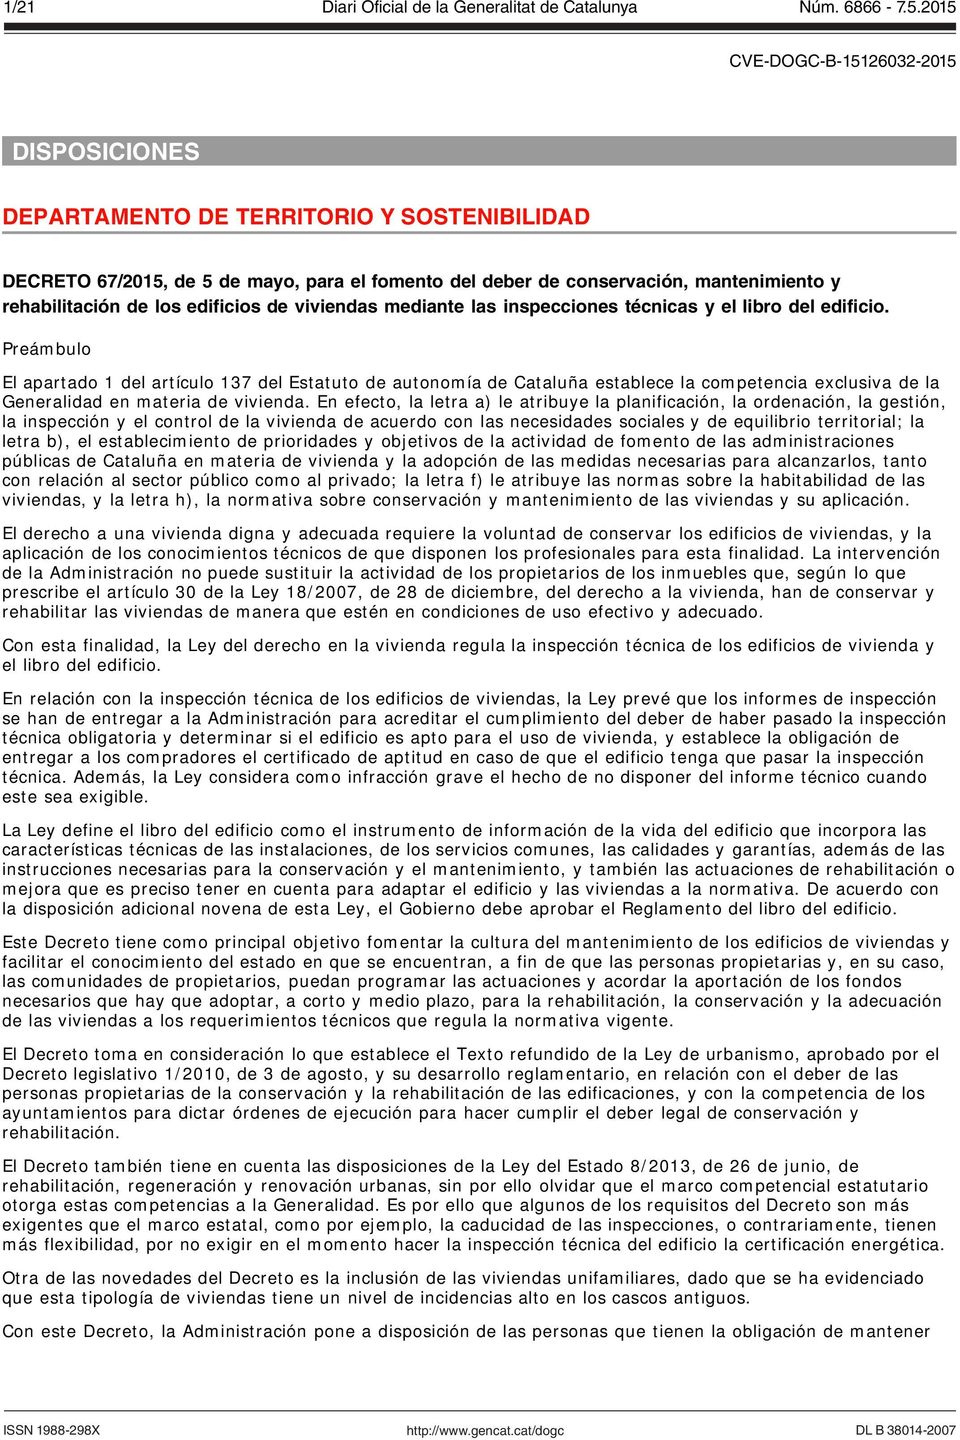 Preámbulo El apartado 1 del artículo 137 del Estatuto de autonomía de Cataluña establece la competencia exclusiva de la Generalidad en materia de vivienda.